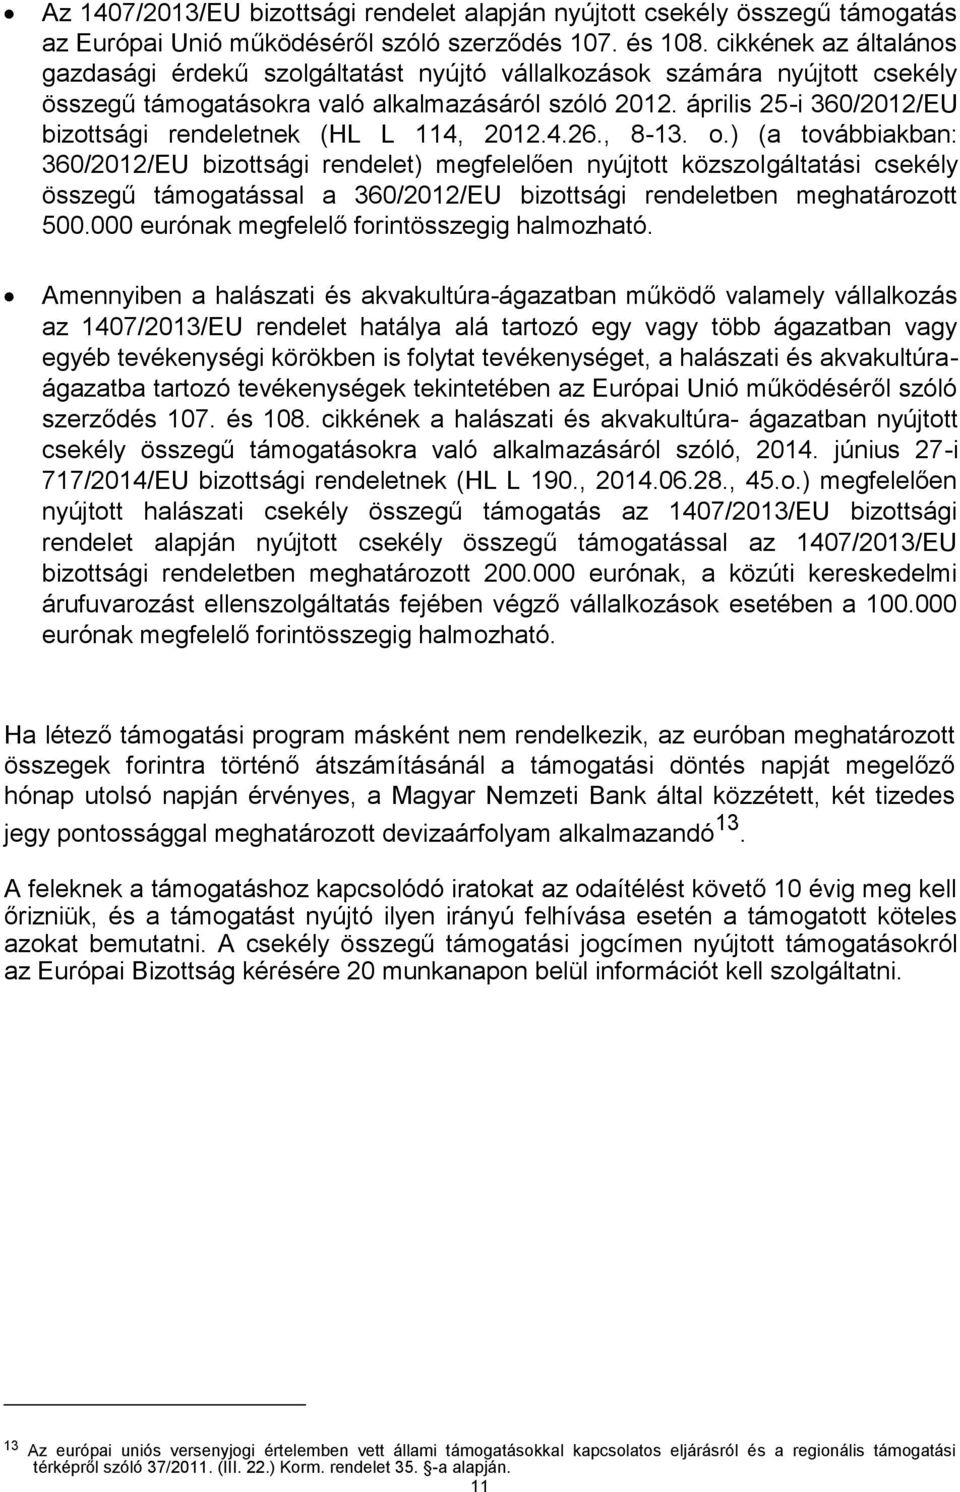 április 25-i 360/2012/EU bizottsági rendeletnek (HL L 114, 2012.4.26., 8-13. o.